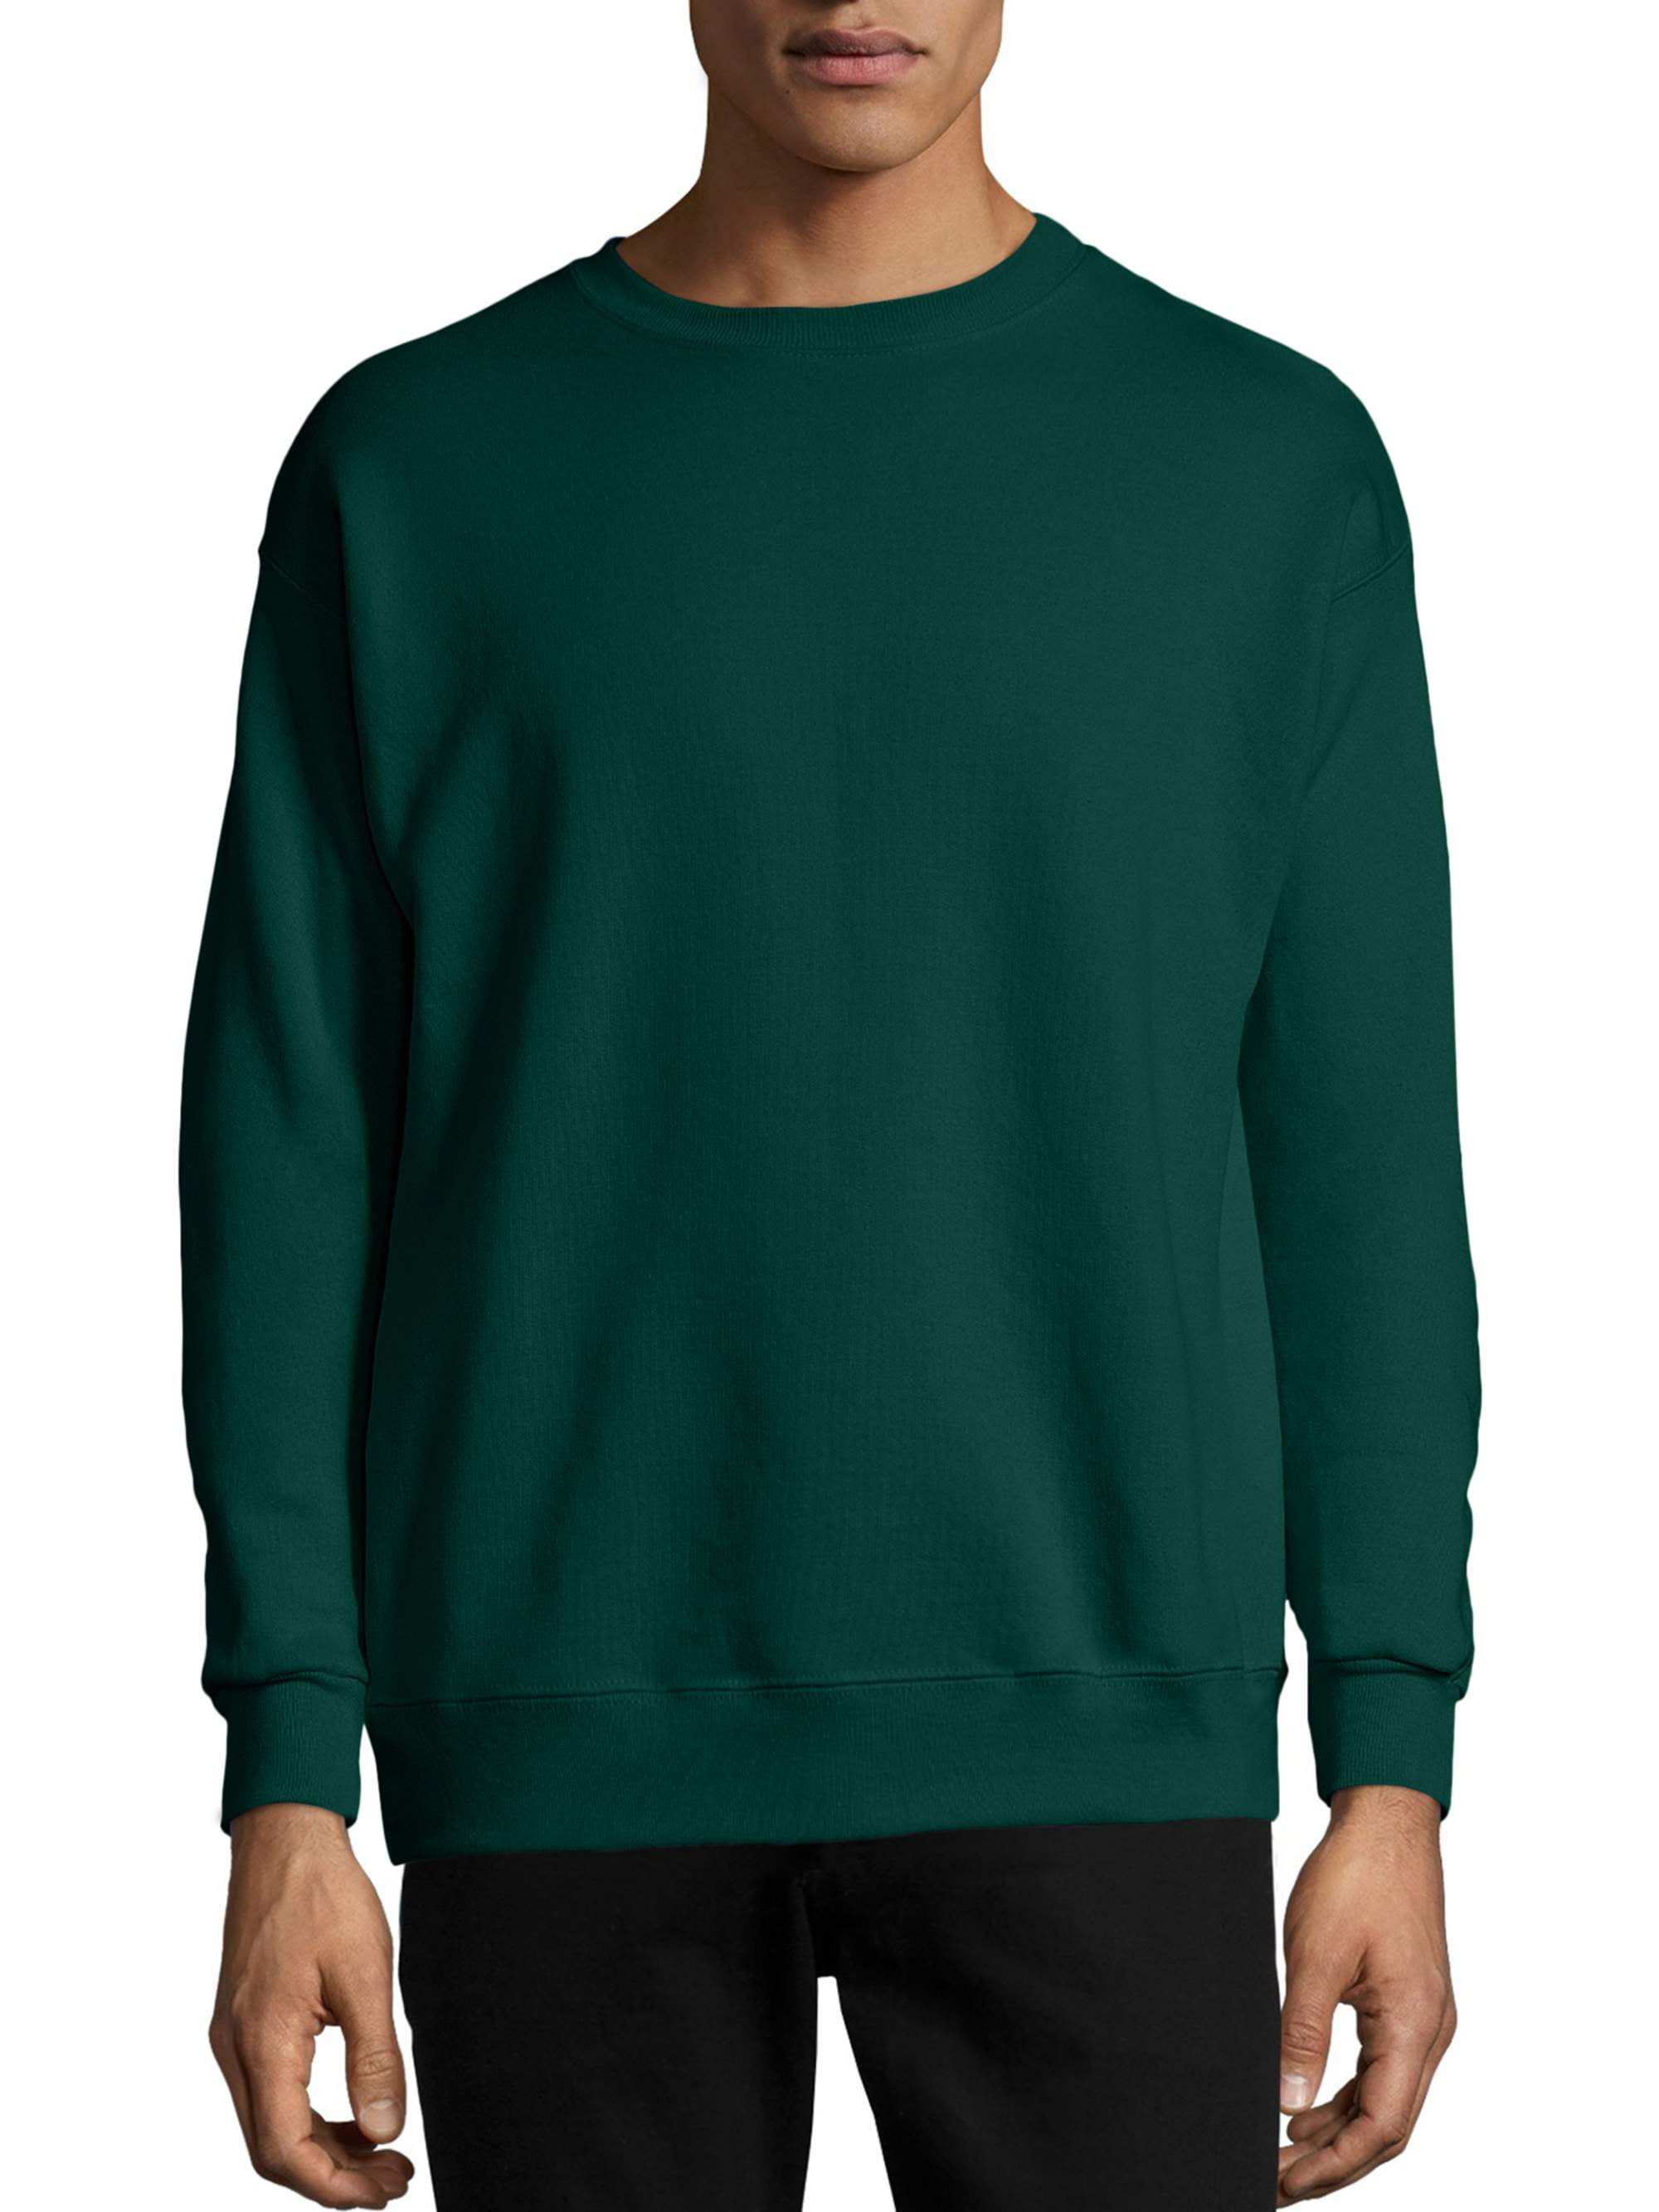 Hanes Men's EcoSmart Fleece Sweatshirt